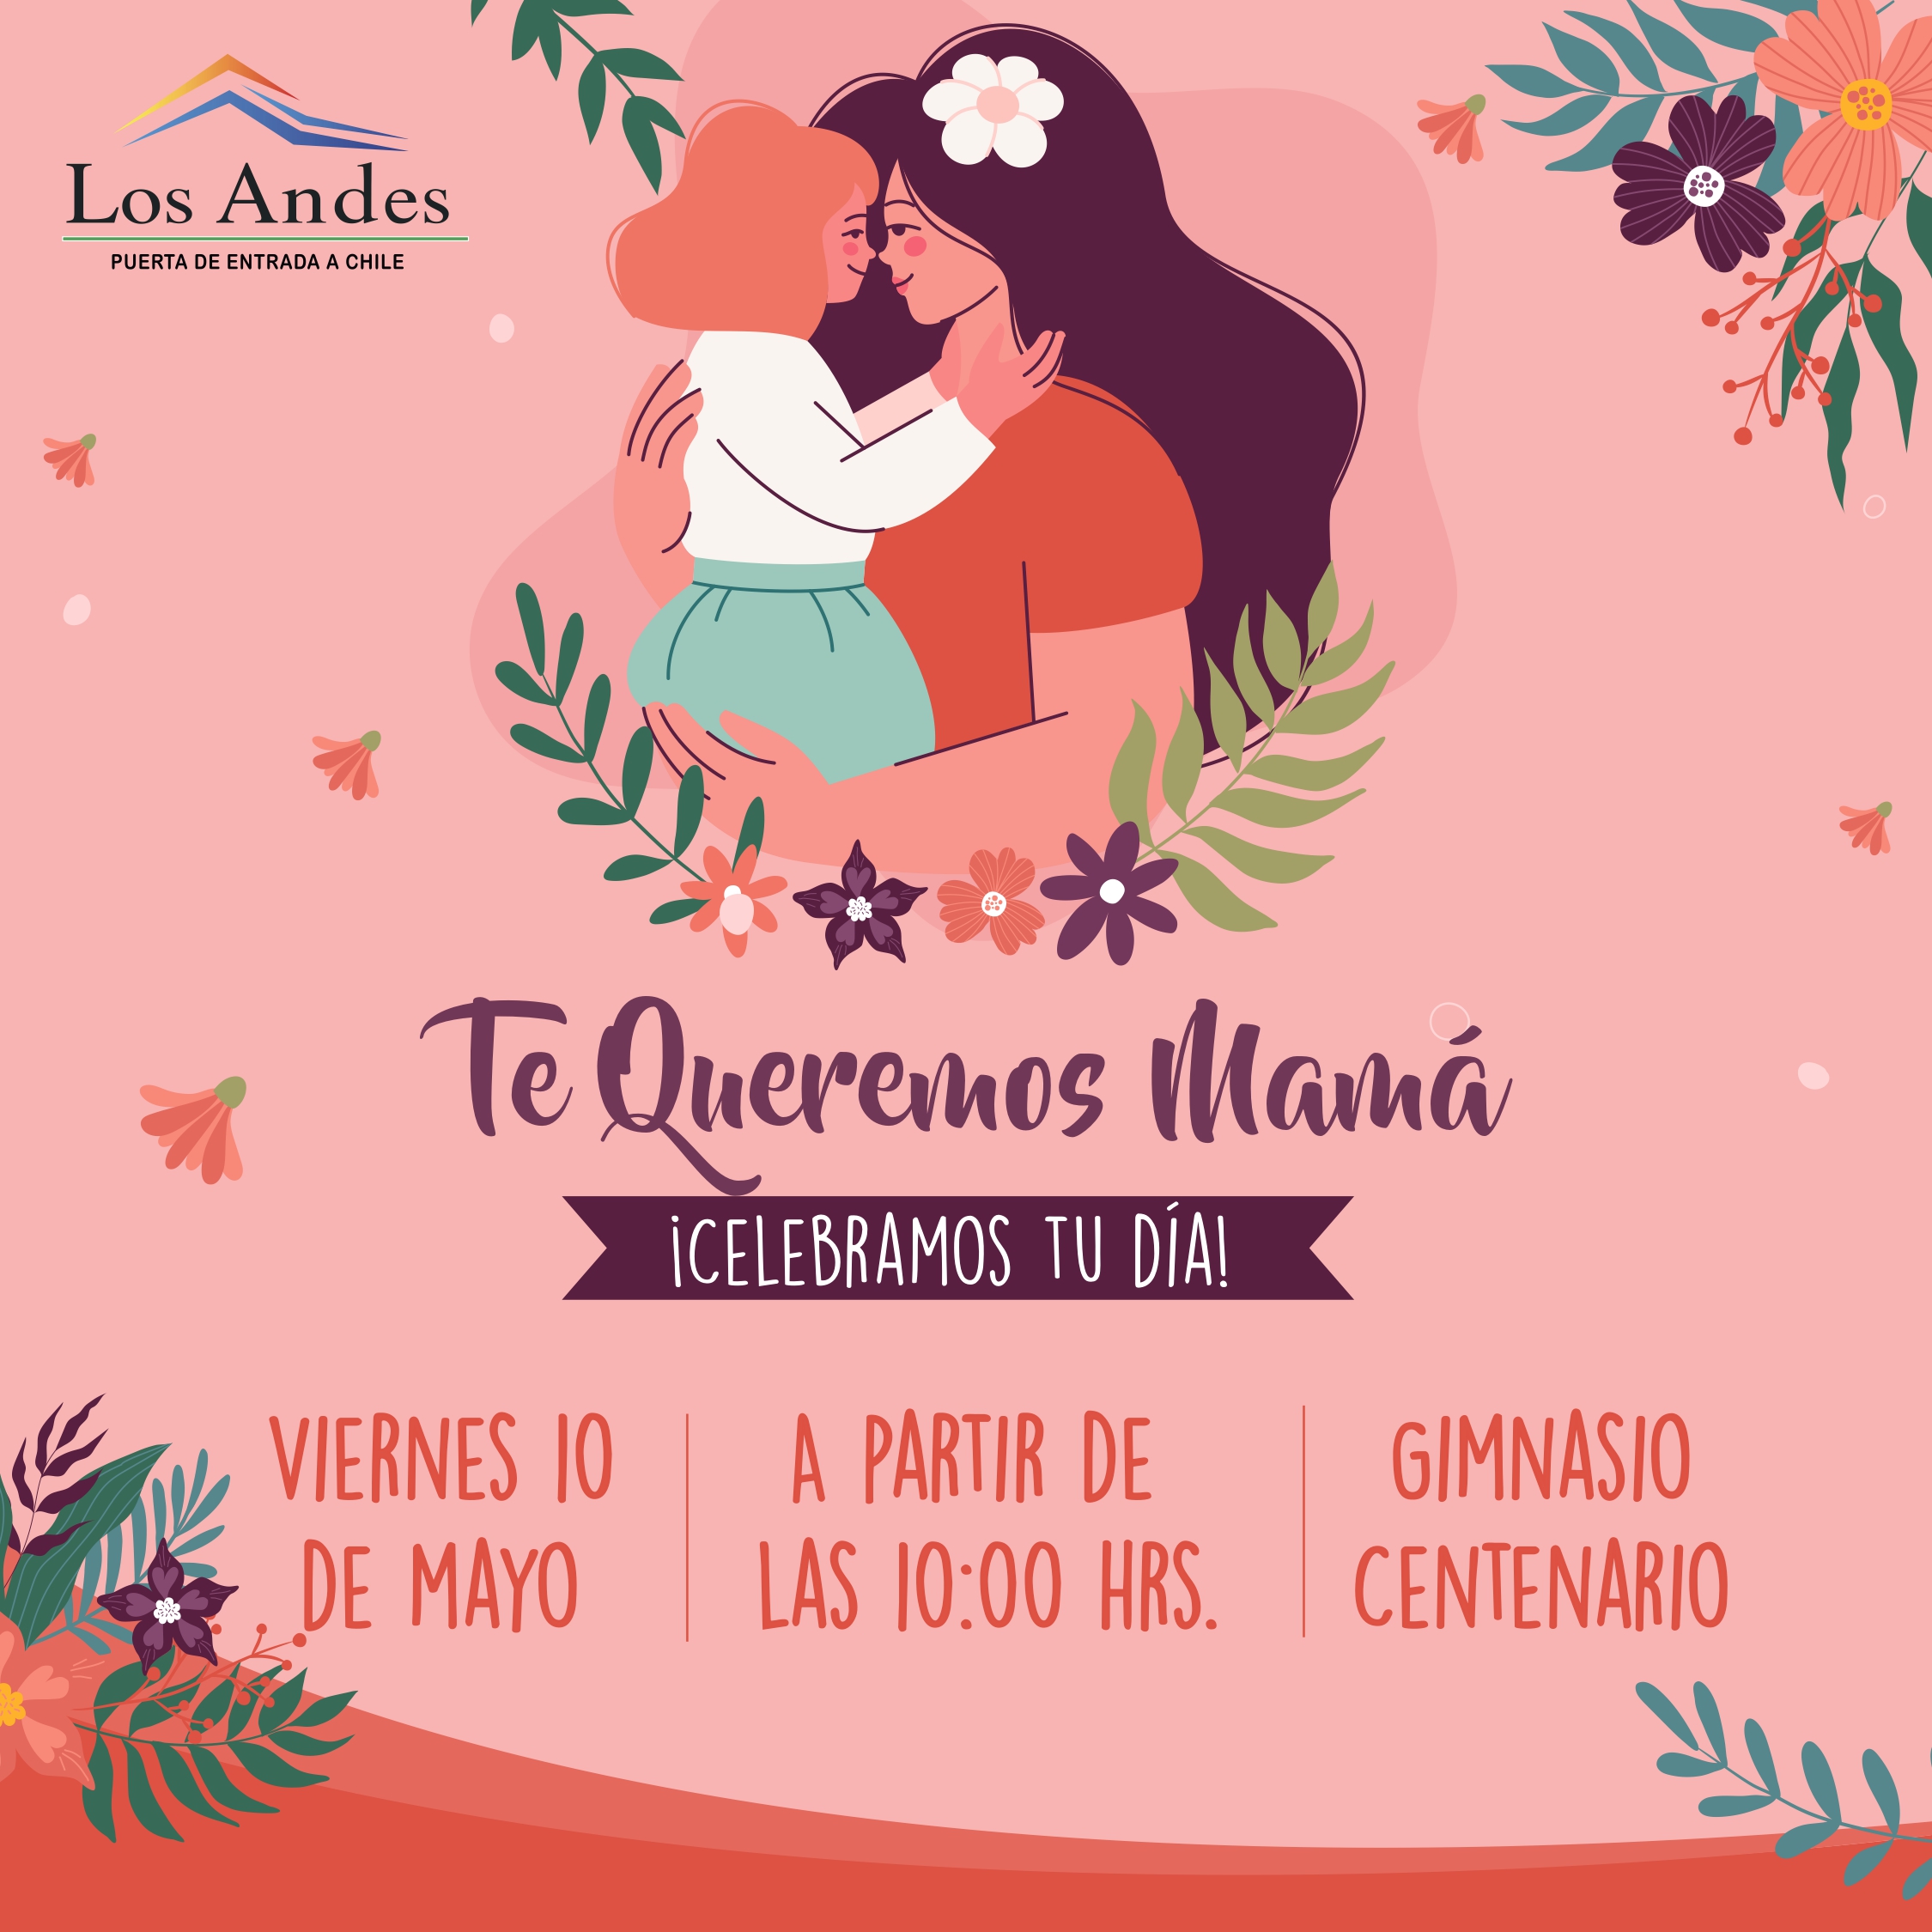 LOS ANDES: En Los Andes tendrán una jornada especial de autocuidado para celebrar el Día de la Madre